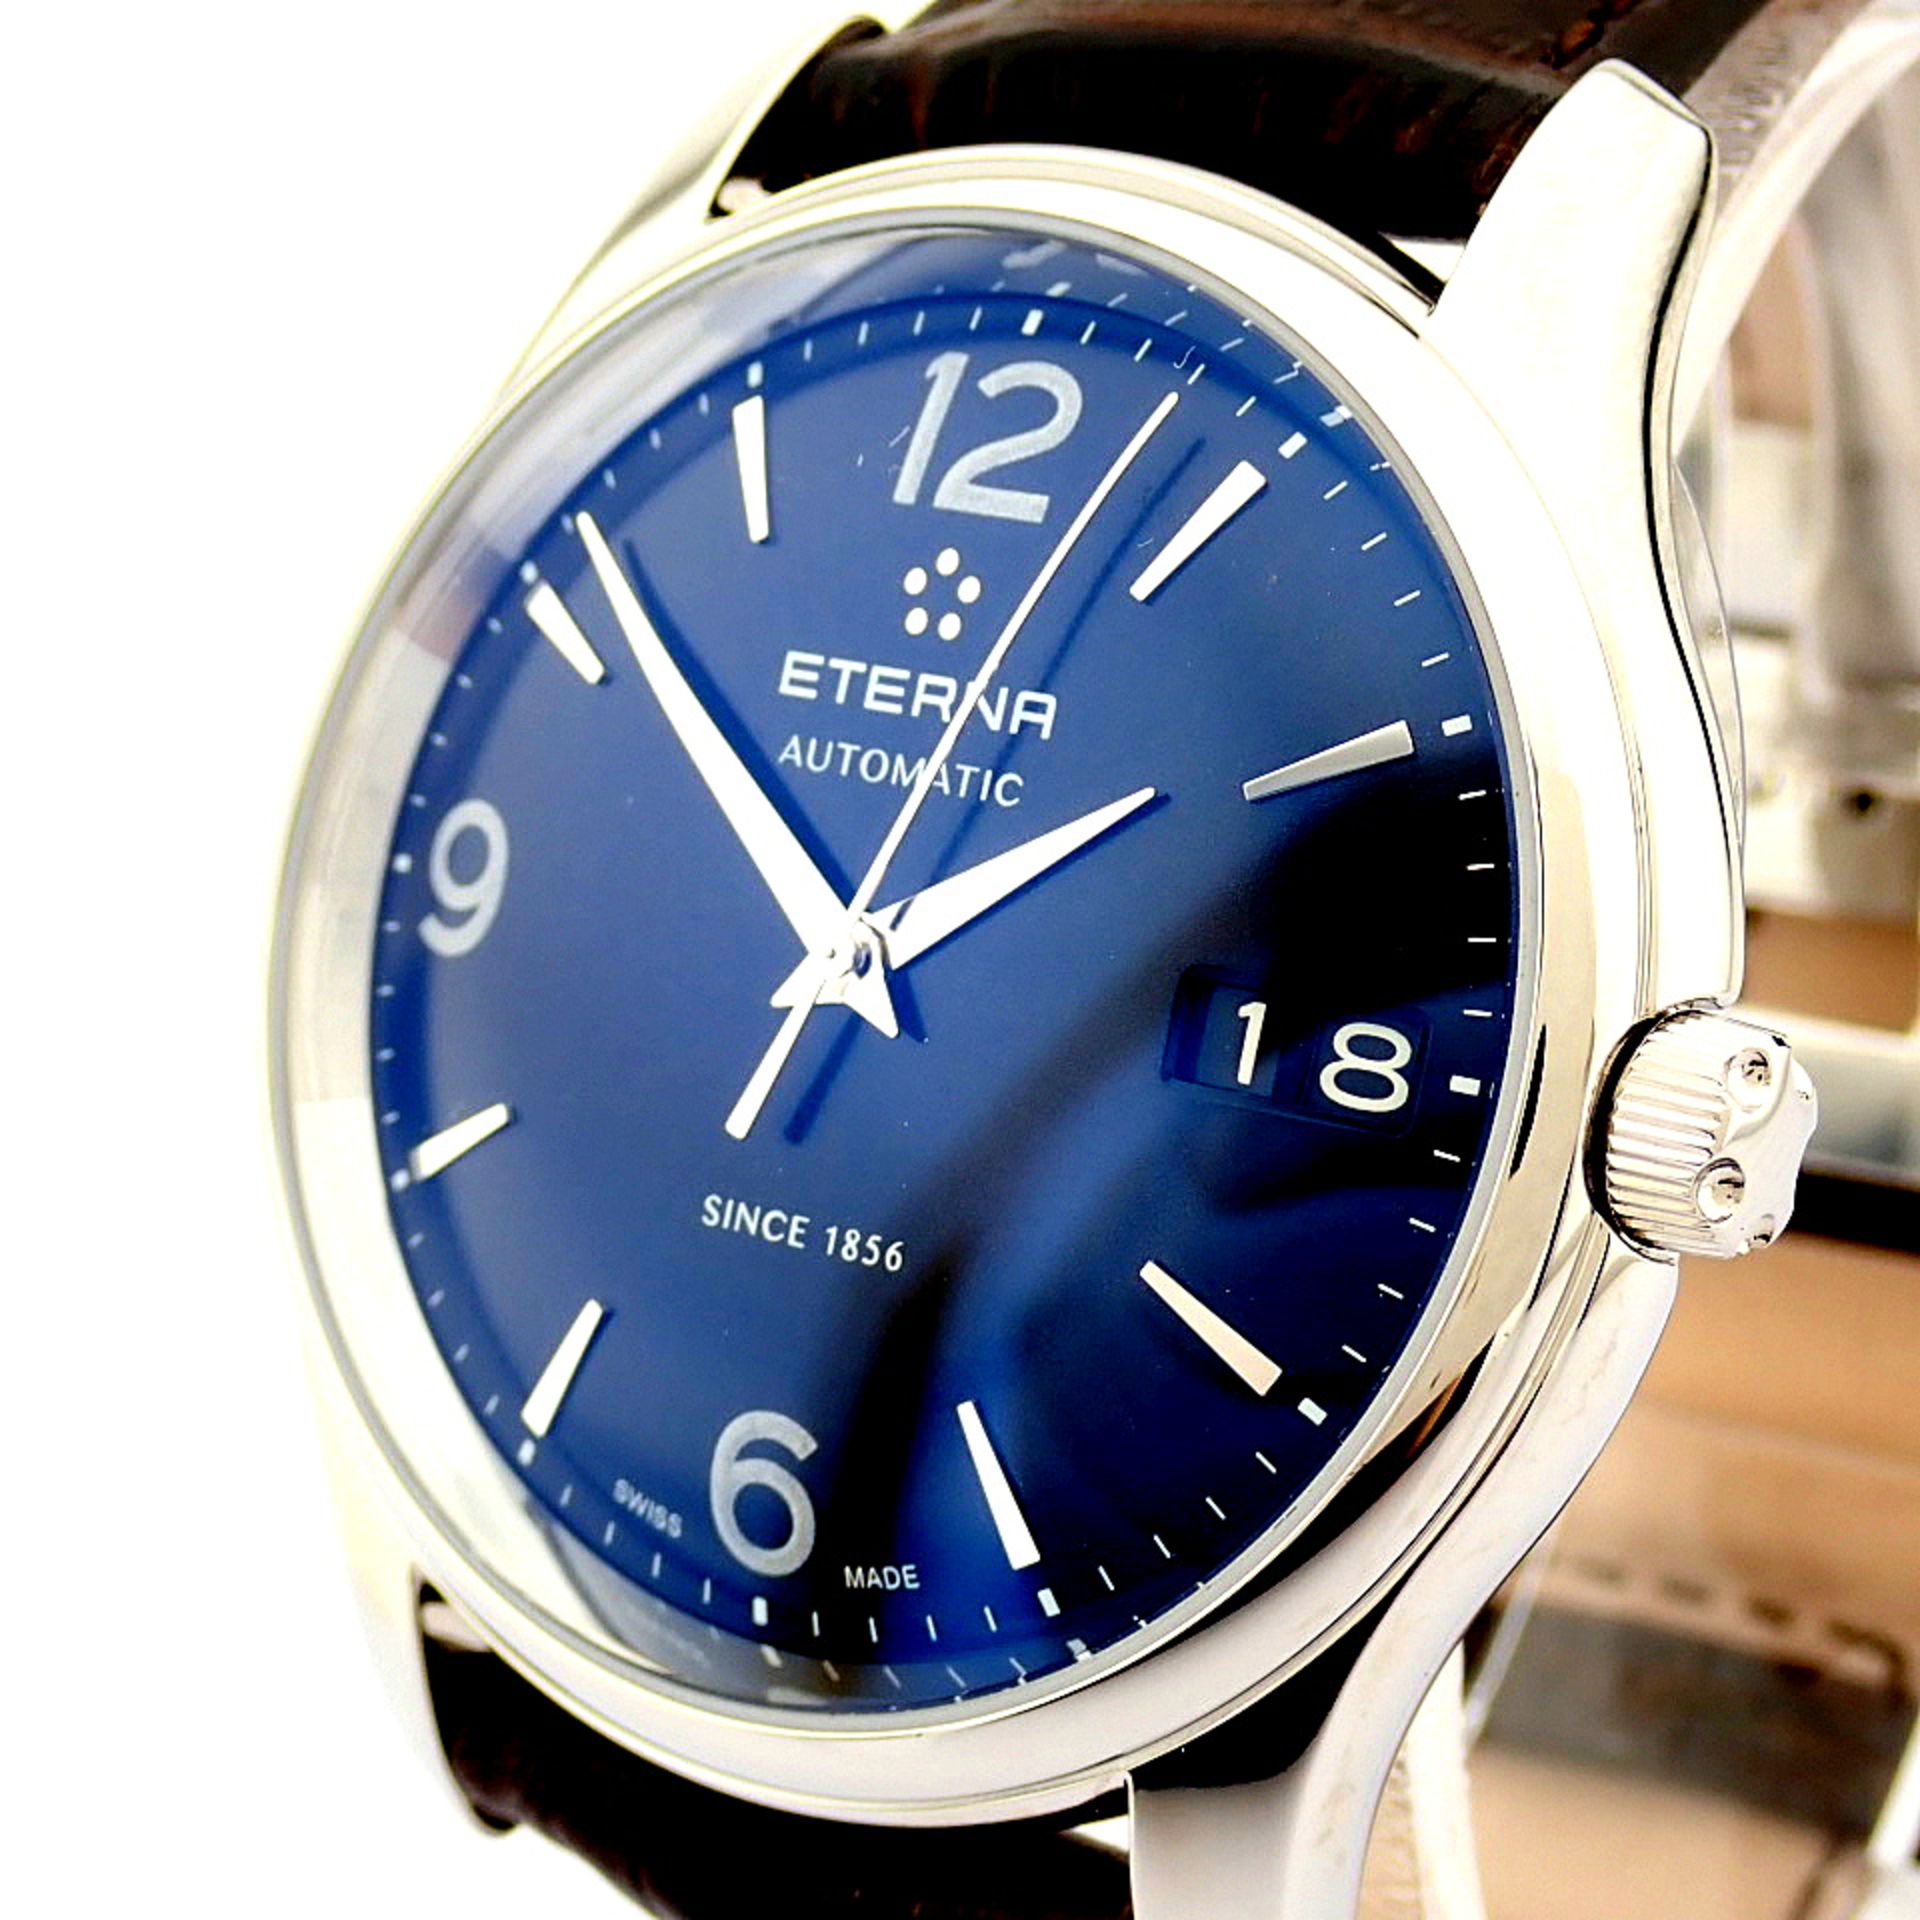 Eterna / Vaughan Big Date 7630.41 - Gentlmen's Steel Wrist Watch - Image 5 of 11